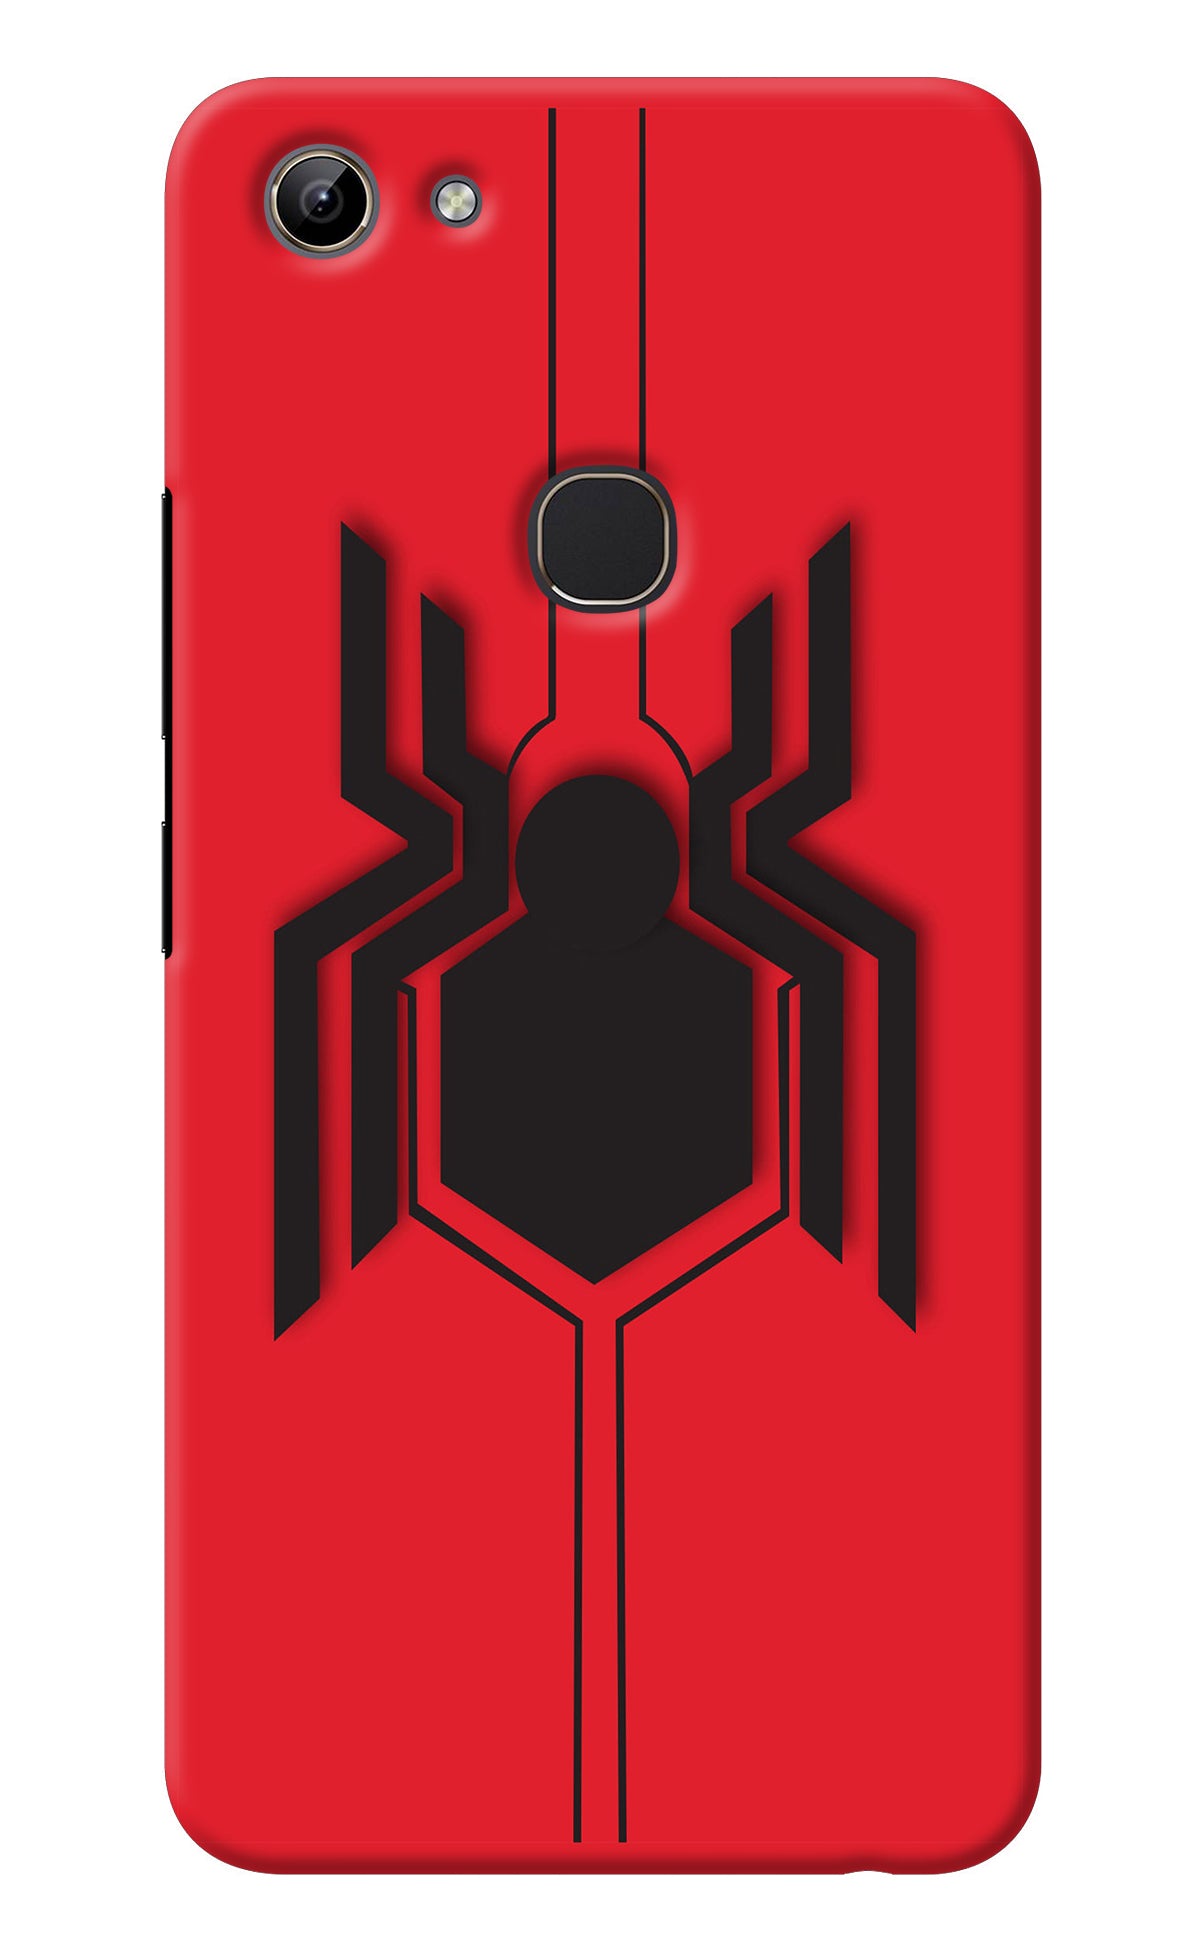 Spider Vivo Y81 Back Cover